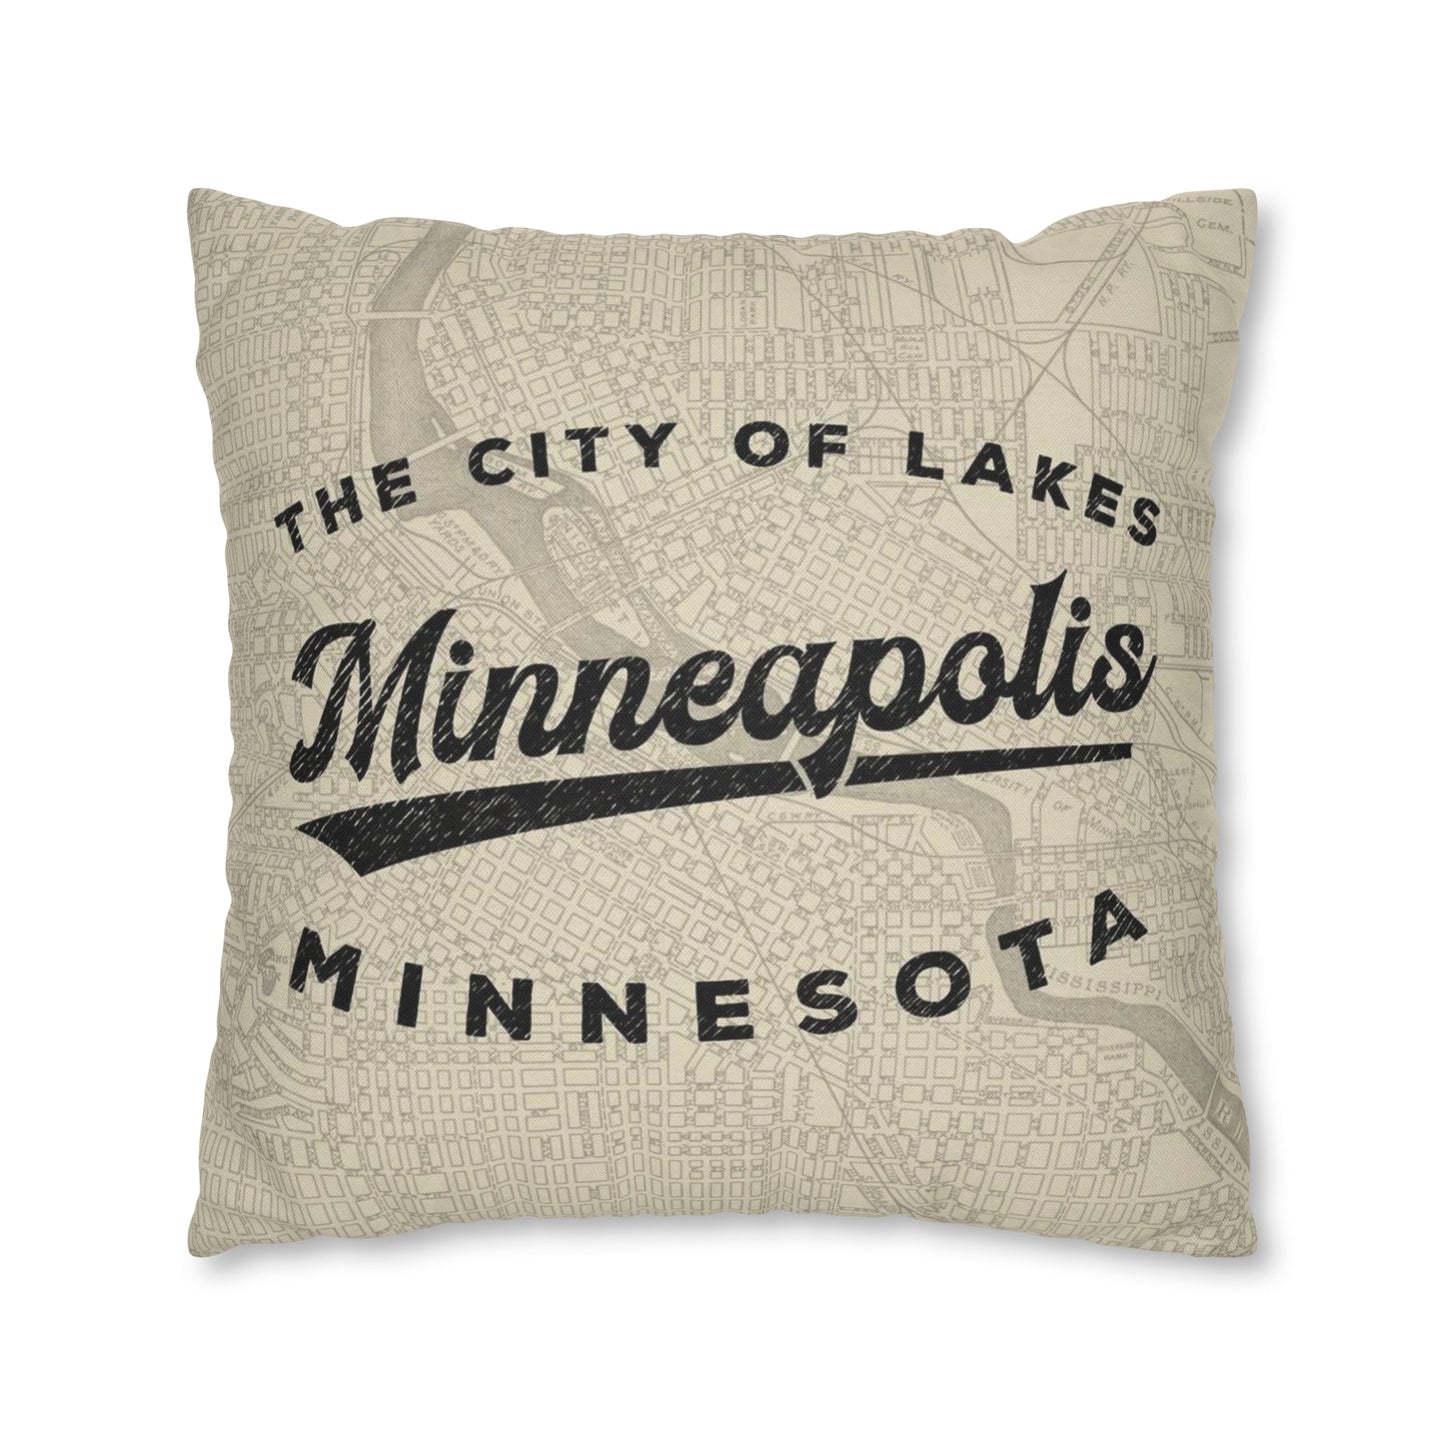 Minneapolis Minnesota Throw Pillow